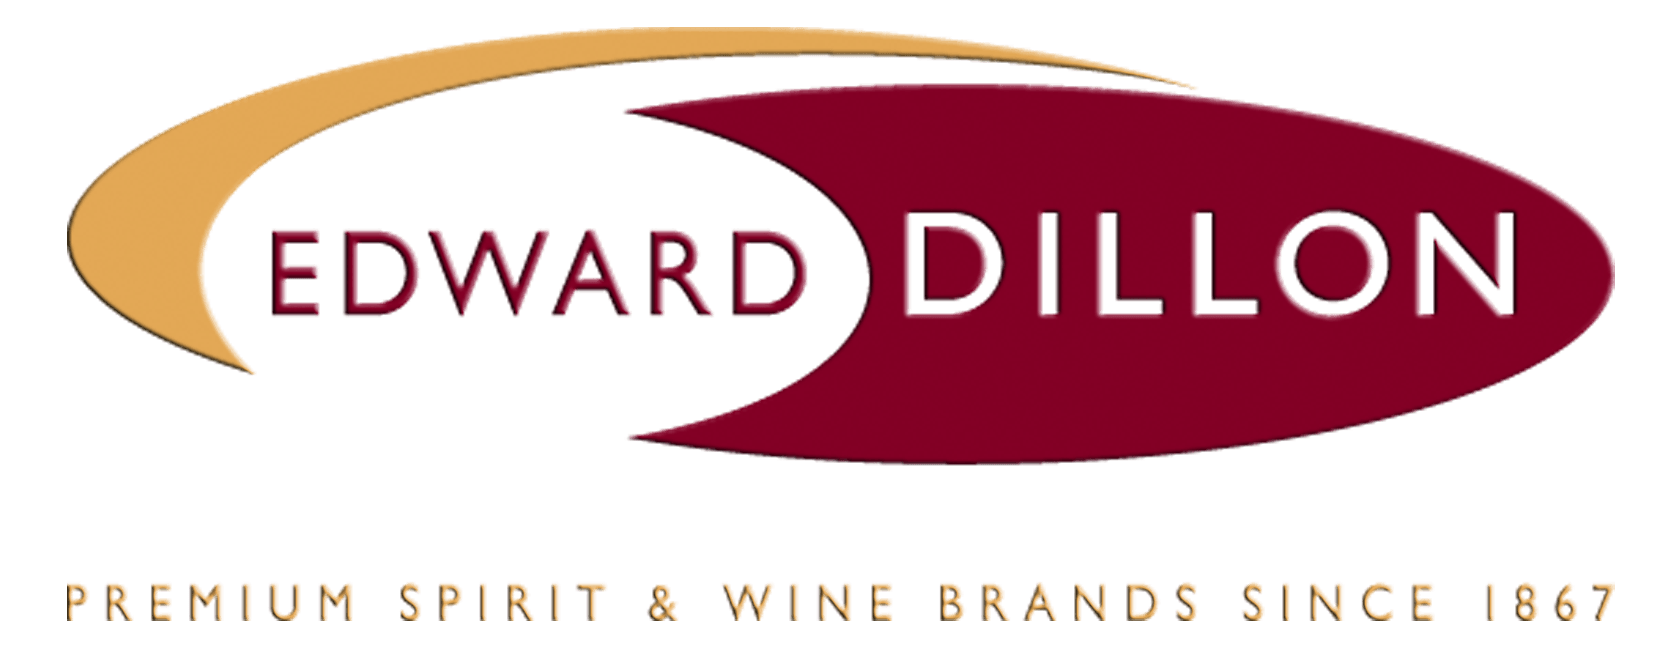 Dillon Logo - Edward Dillon